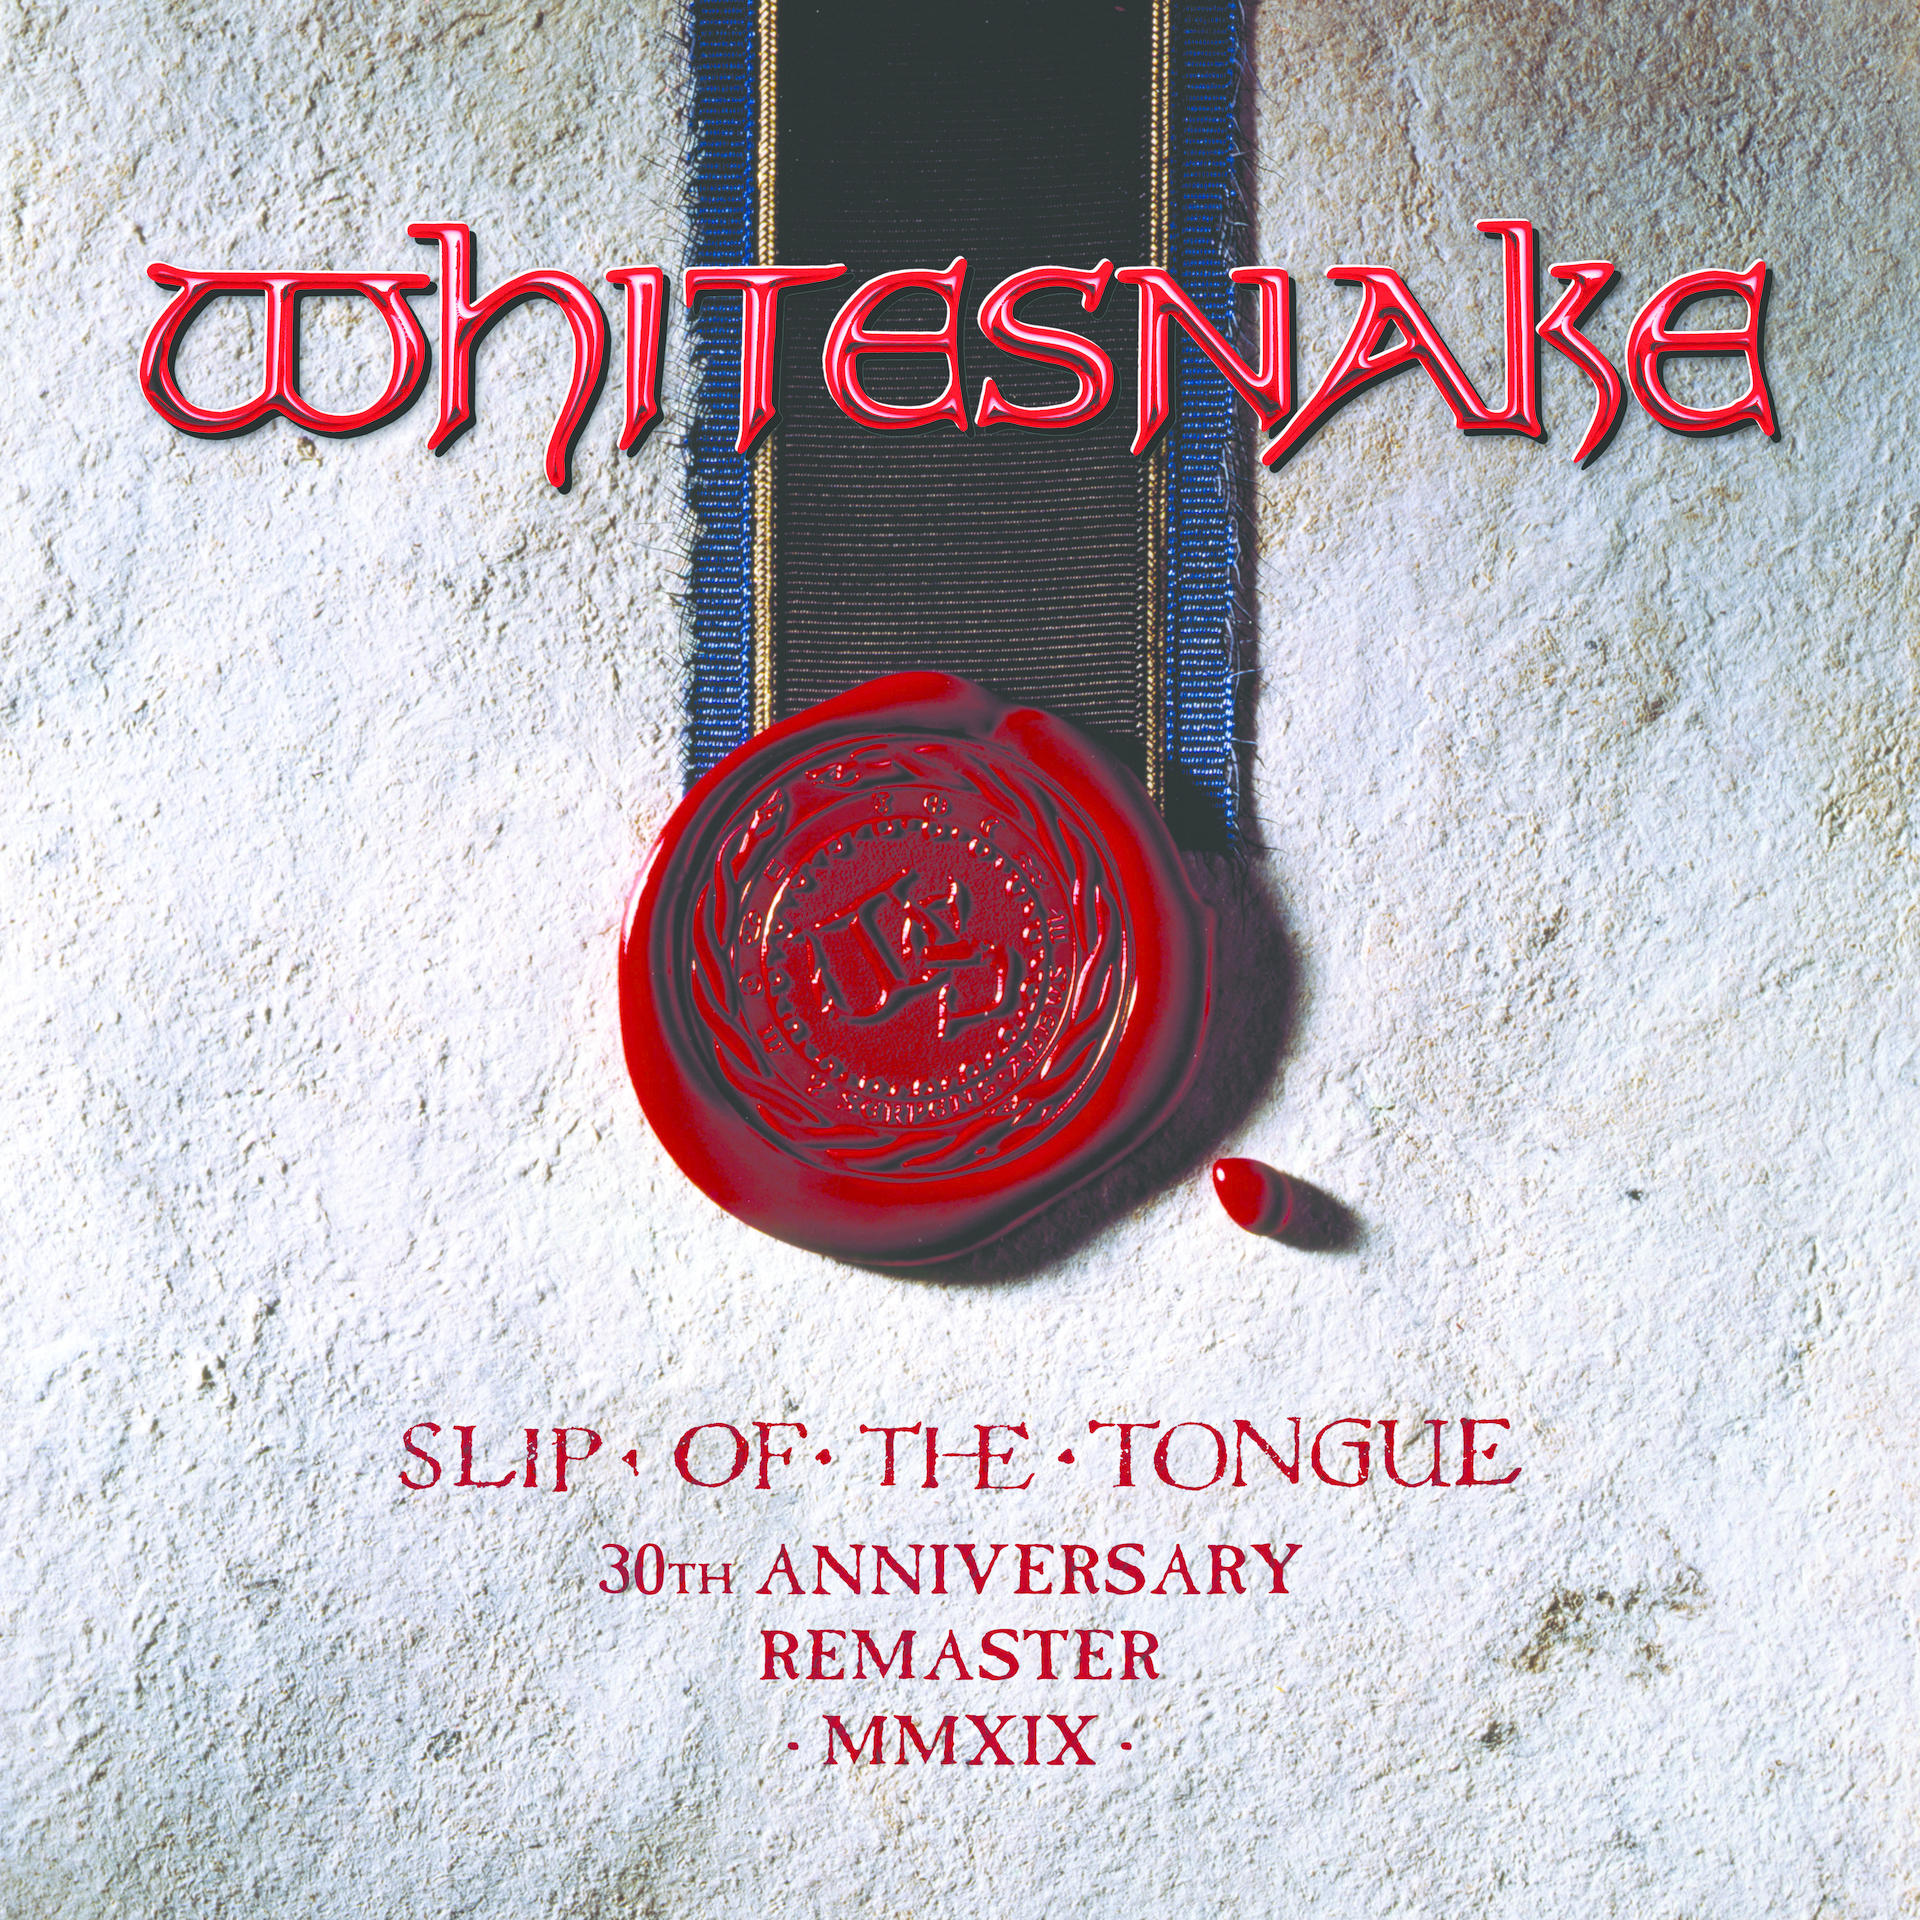 Whitesnake - Slip Remaster) Tongue (2019 - (CD) Of The